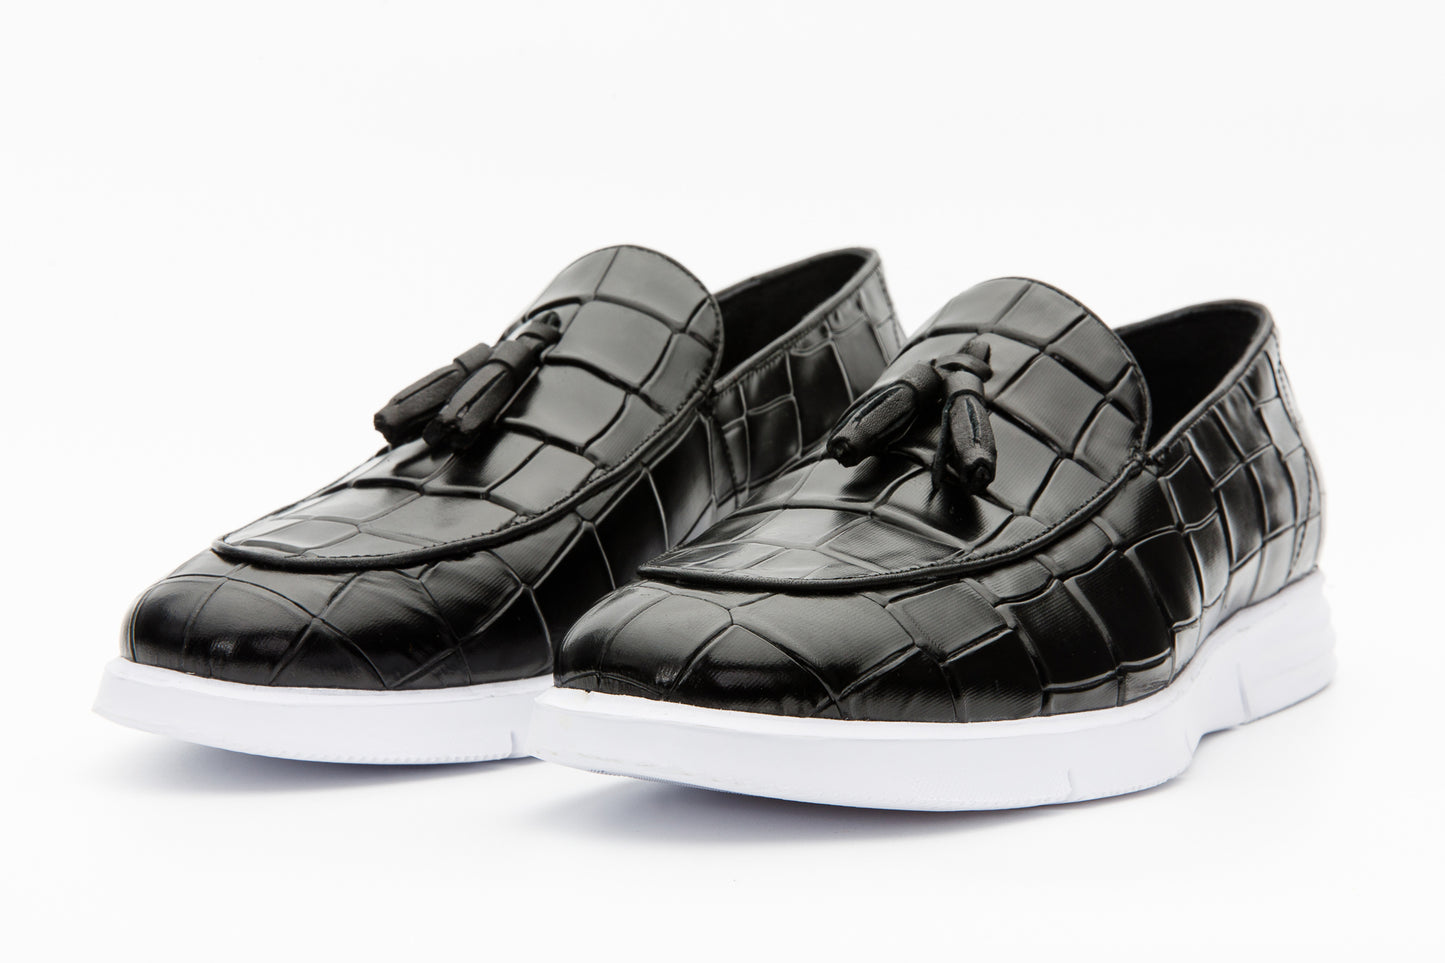 The Parga Black Leather Tassel Casual Loafer Men Shoe